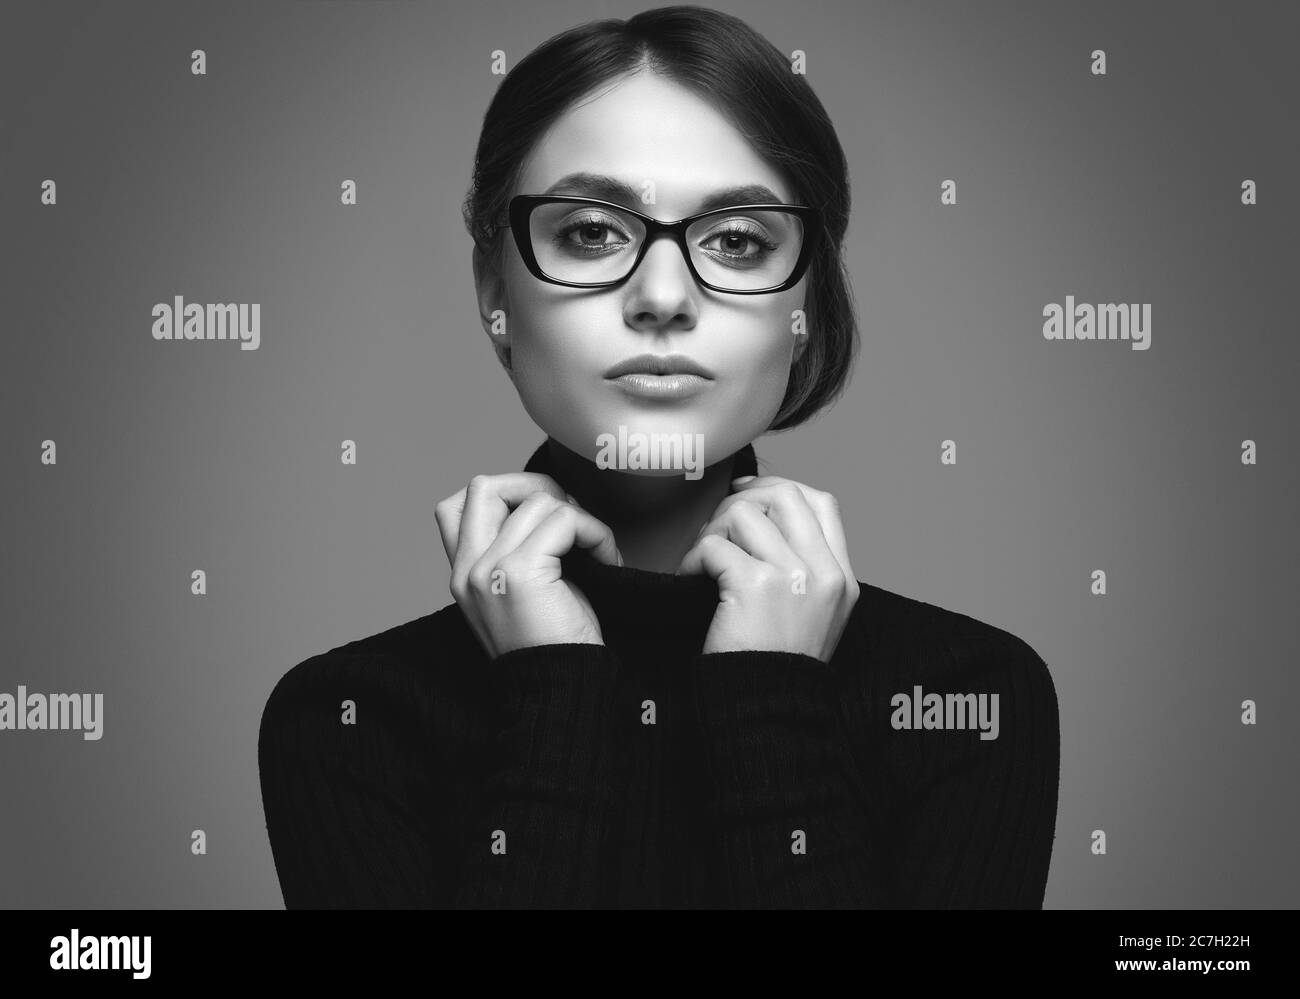 Retrato de una chica linda con un suéter de cuello turtleneck negro y gafas con estilo posando sobre fondo gris en el estudio Foto de stock